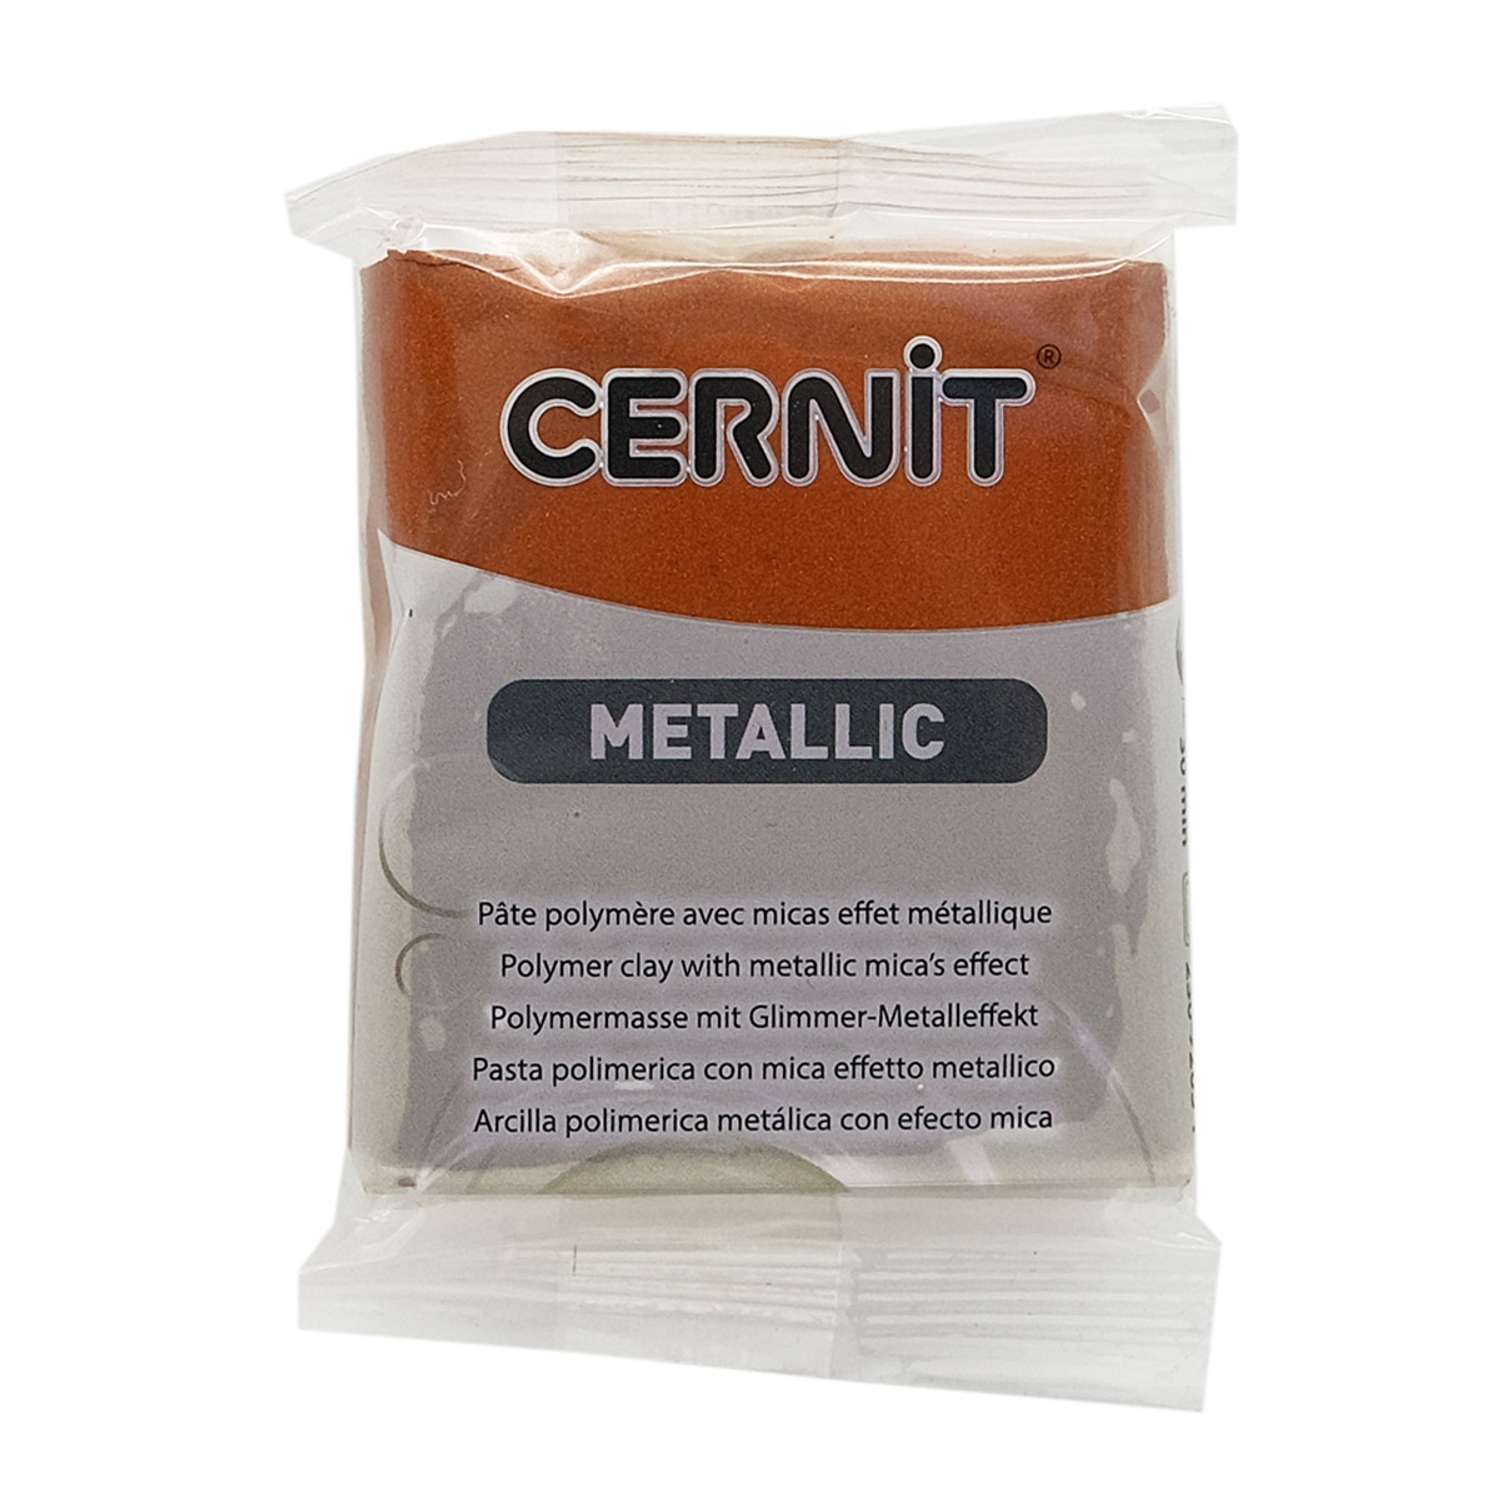 Полимерная глина Cernit пластика запекаемая Цернит metallic 56 гр CE0870064 - фото 7